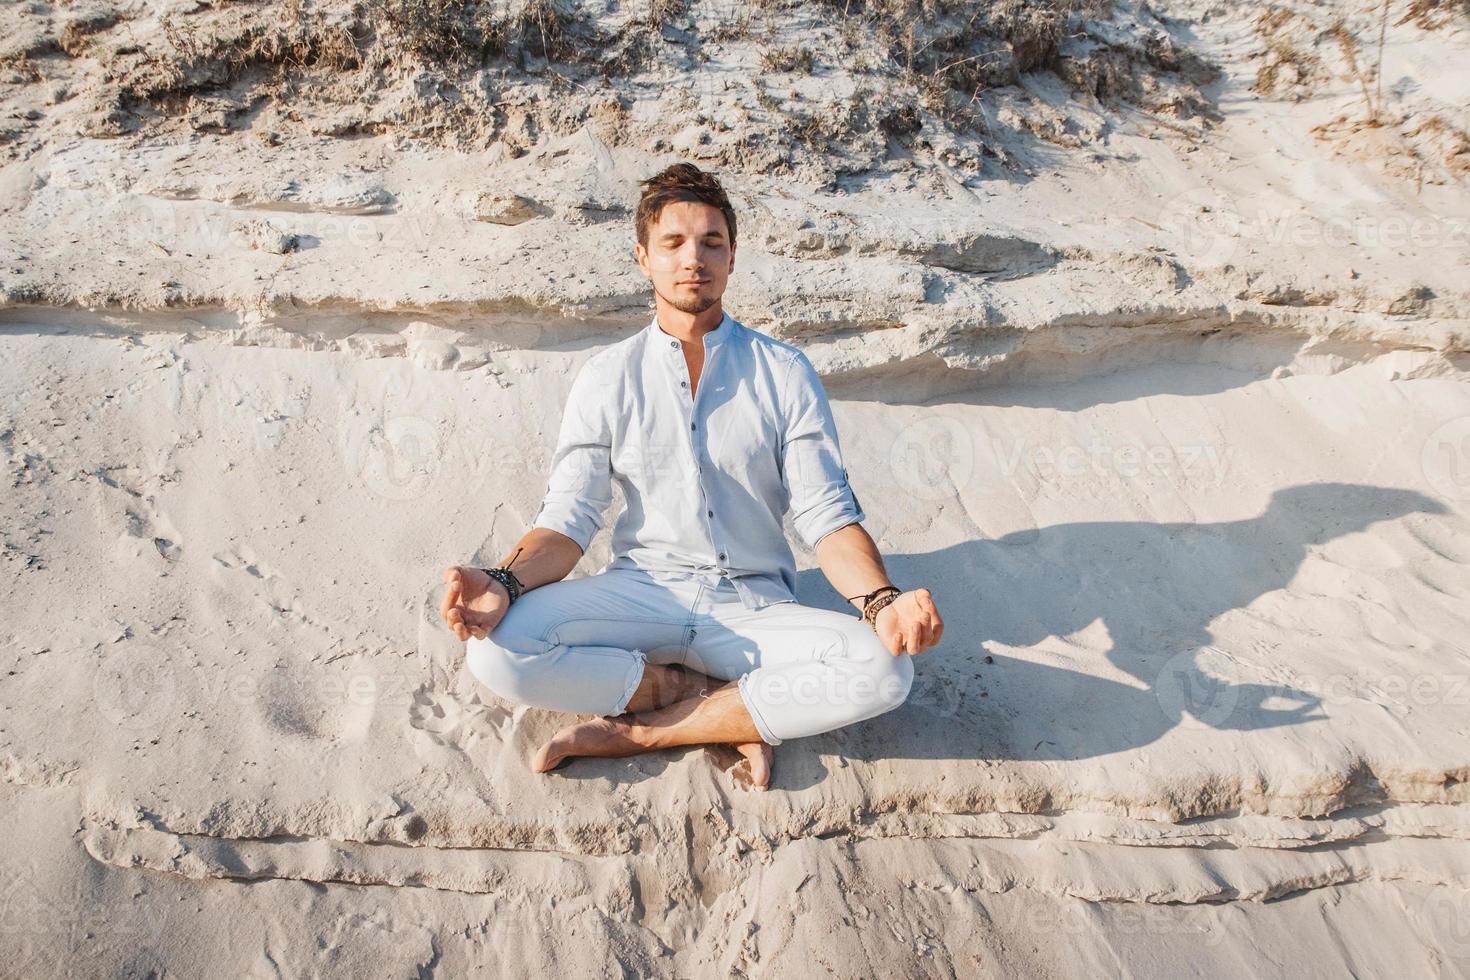 L'homme est assis dans une pose de méditation sur la plage de sable photo